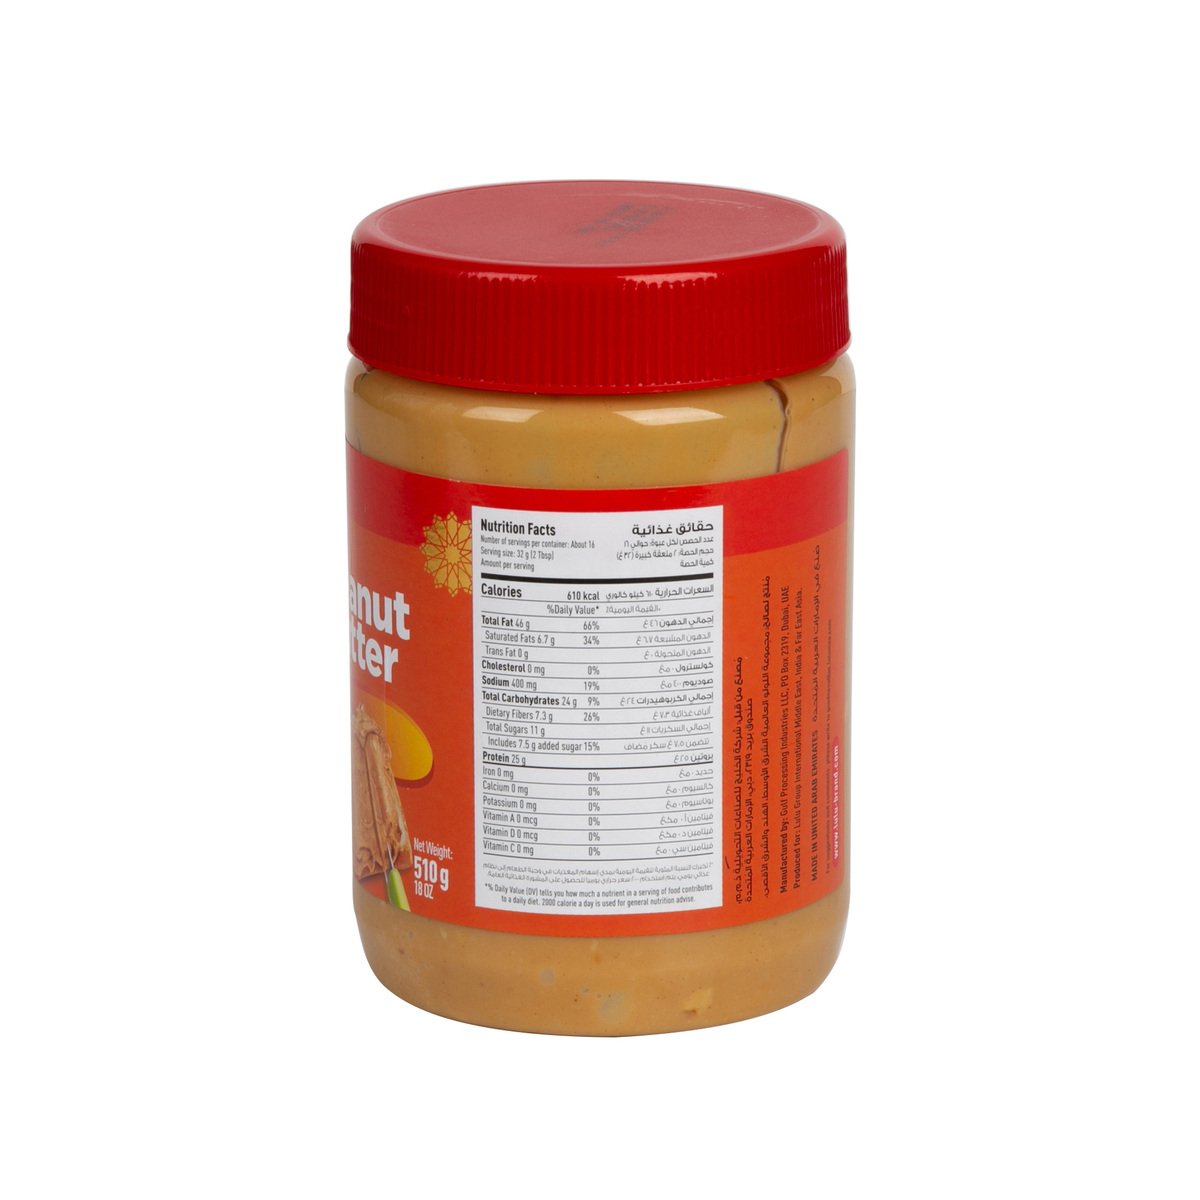 LuLu Crunchy Peanut Butter 2 x 510 g